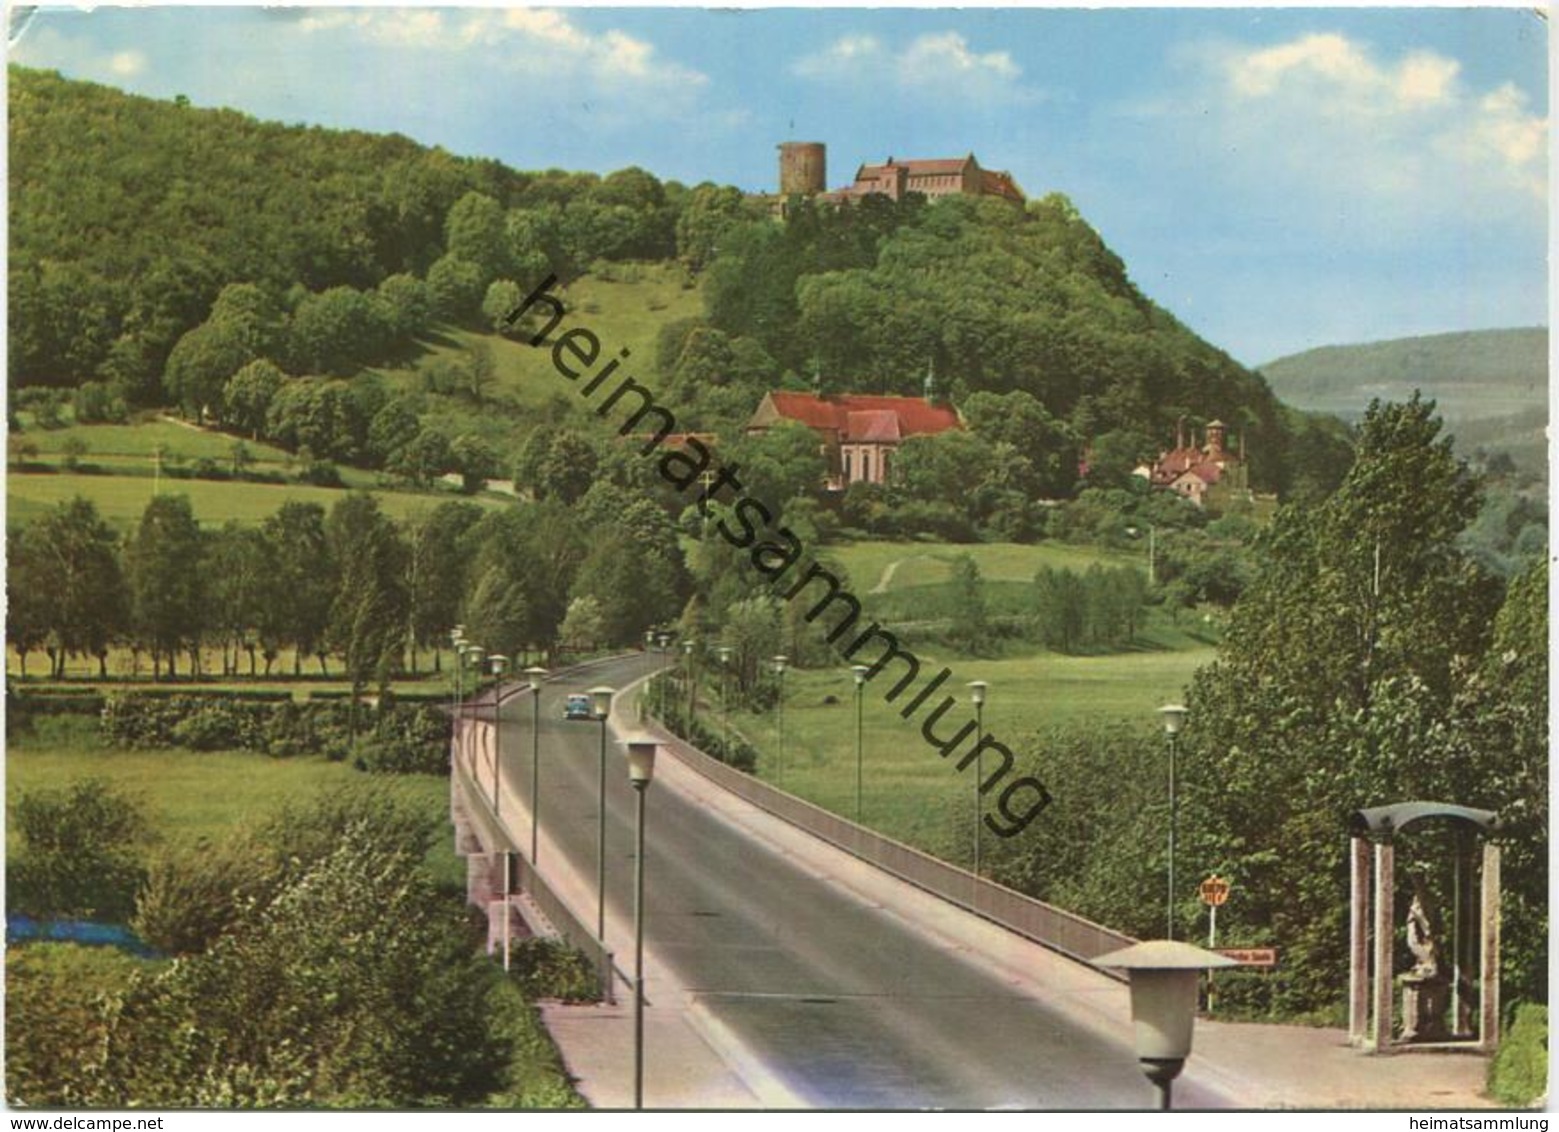 Schloss Saaleck Bei Hammelburg - AK Grossformat - Verlag Reinhold Lippert Ebermannstadt - Gel. 1973 - Hammelburg